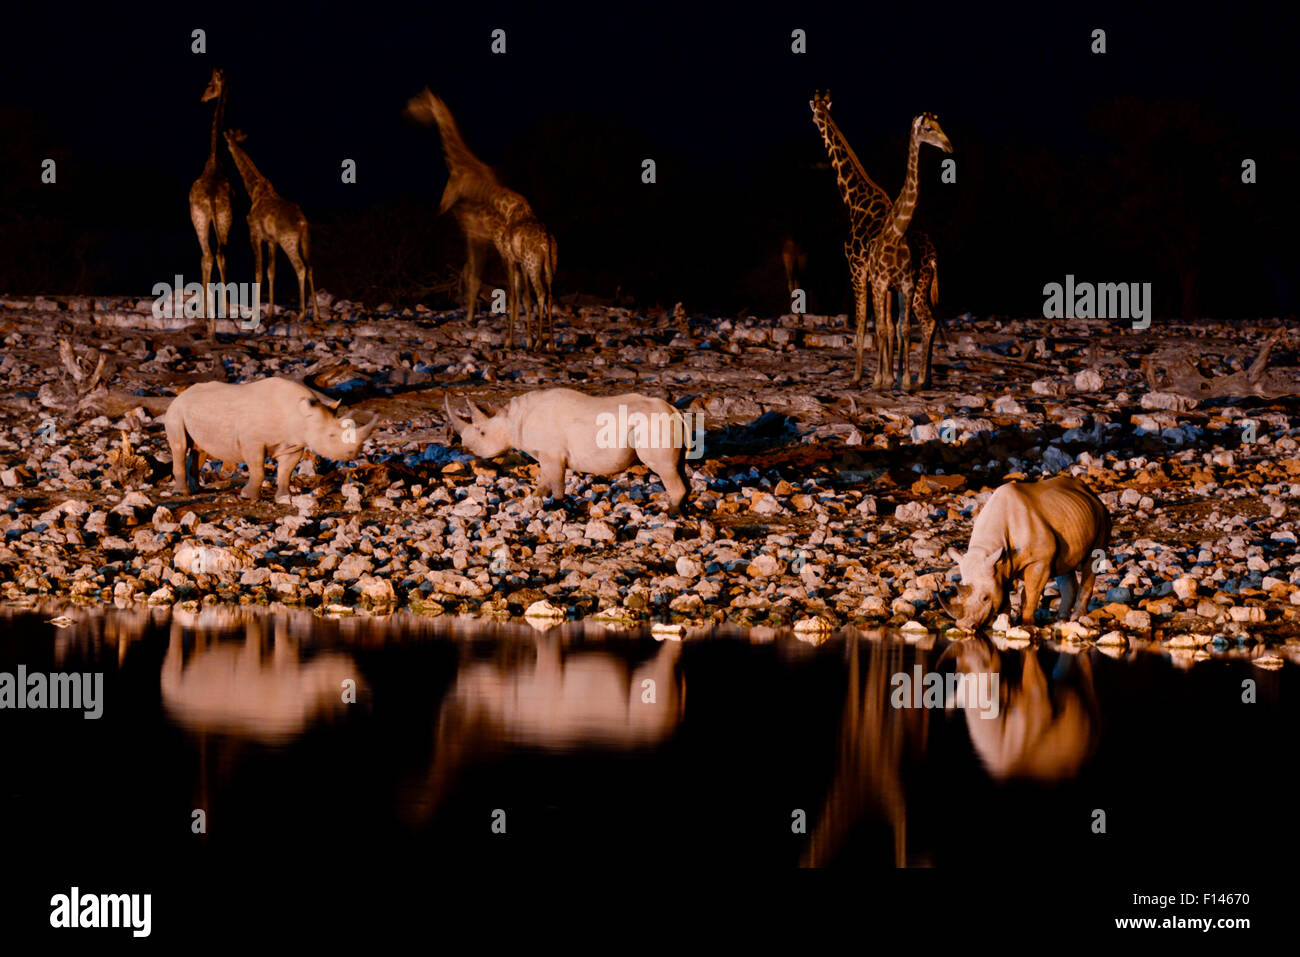 Le rhinocéros noir (Diceros bicornis) et de l'Angola Girafe (Giraffa camelopardalis angolensis) au point d'eau la nuit, prises avec caméra infra rouge, pan Okaukuejo, Etosha National Park, Namibie. Banque D'Images